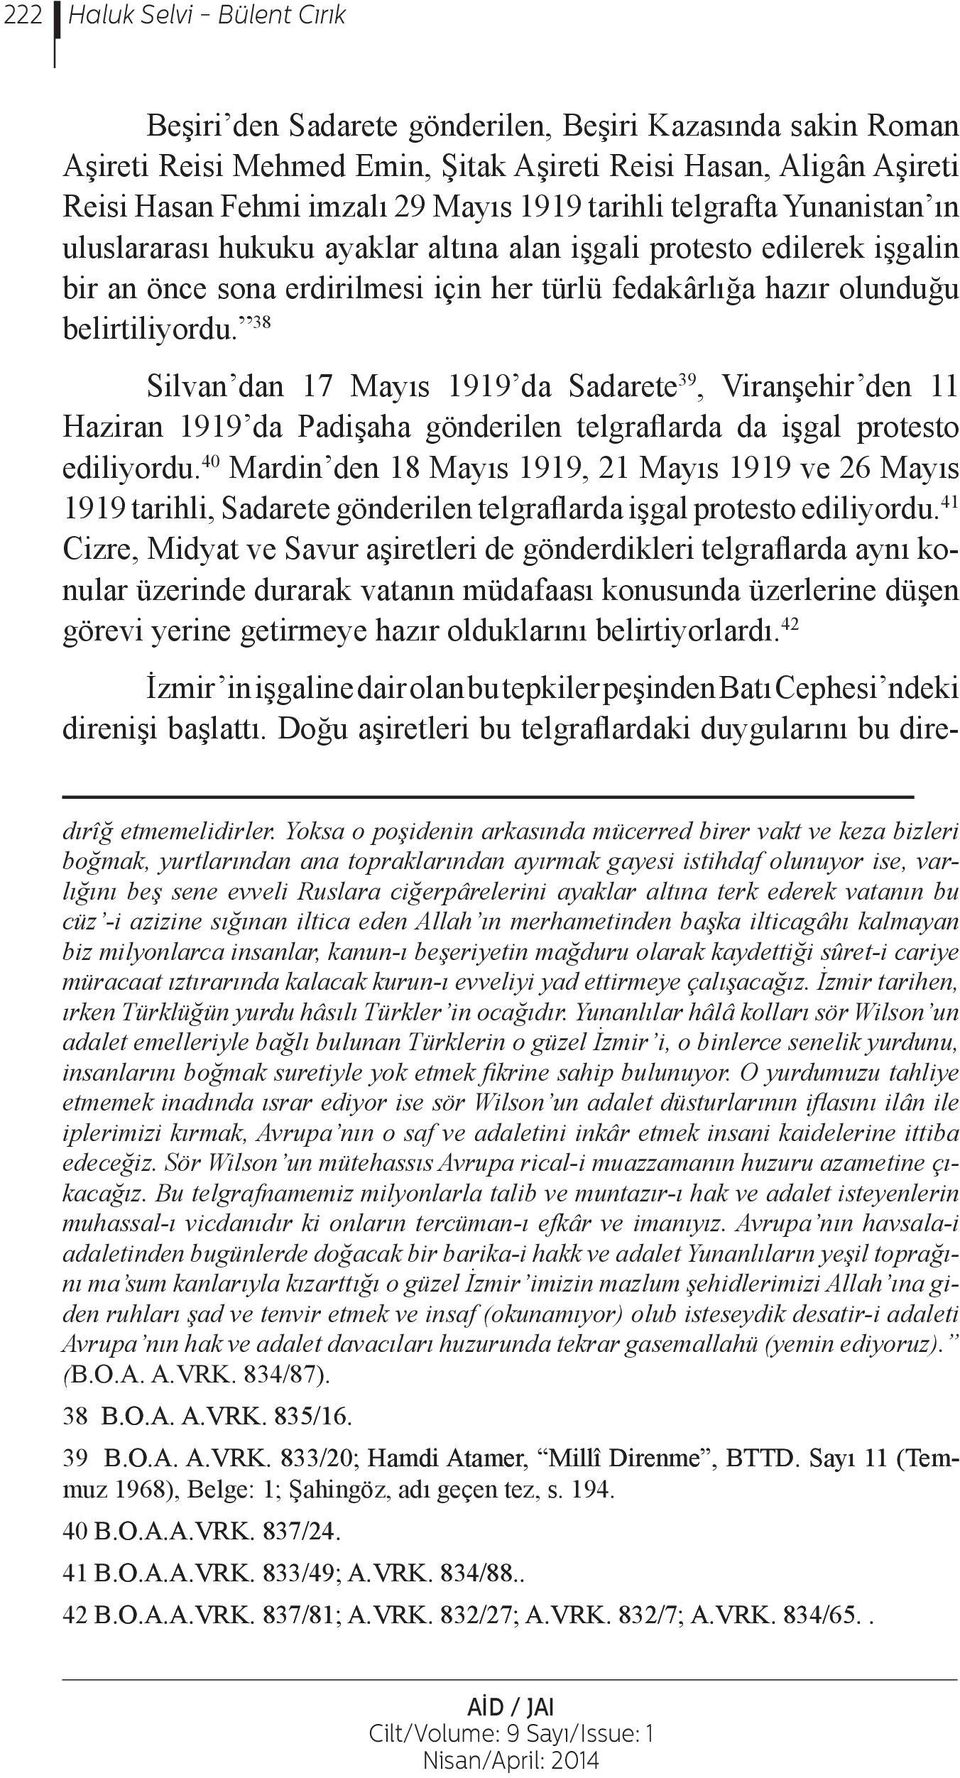 38 Silvan dan 17 Mayıs 1919 da Sadarete 39, Viranşehir den 11 Haziran 1919 da Padişaha gönderilen telgraflarda da işgal protesto ediliyordu.